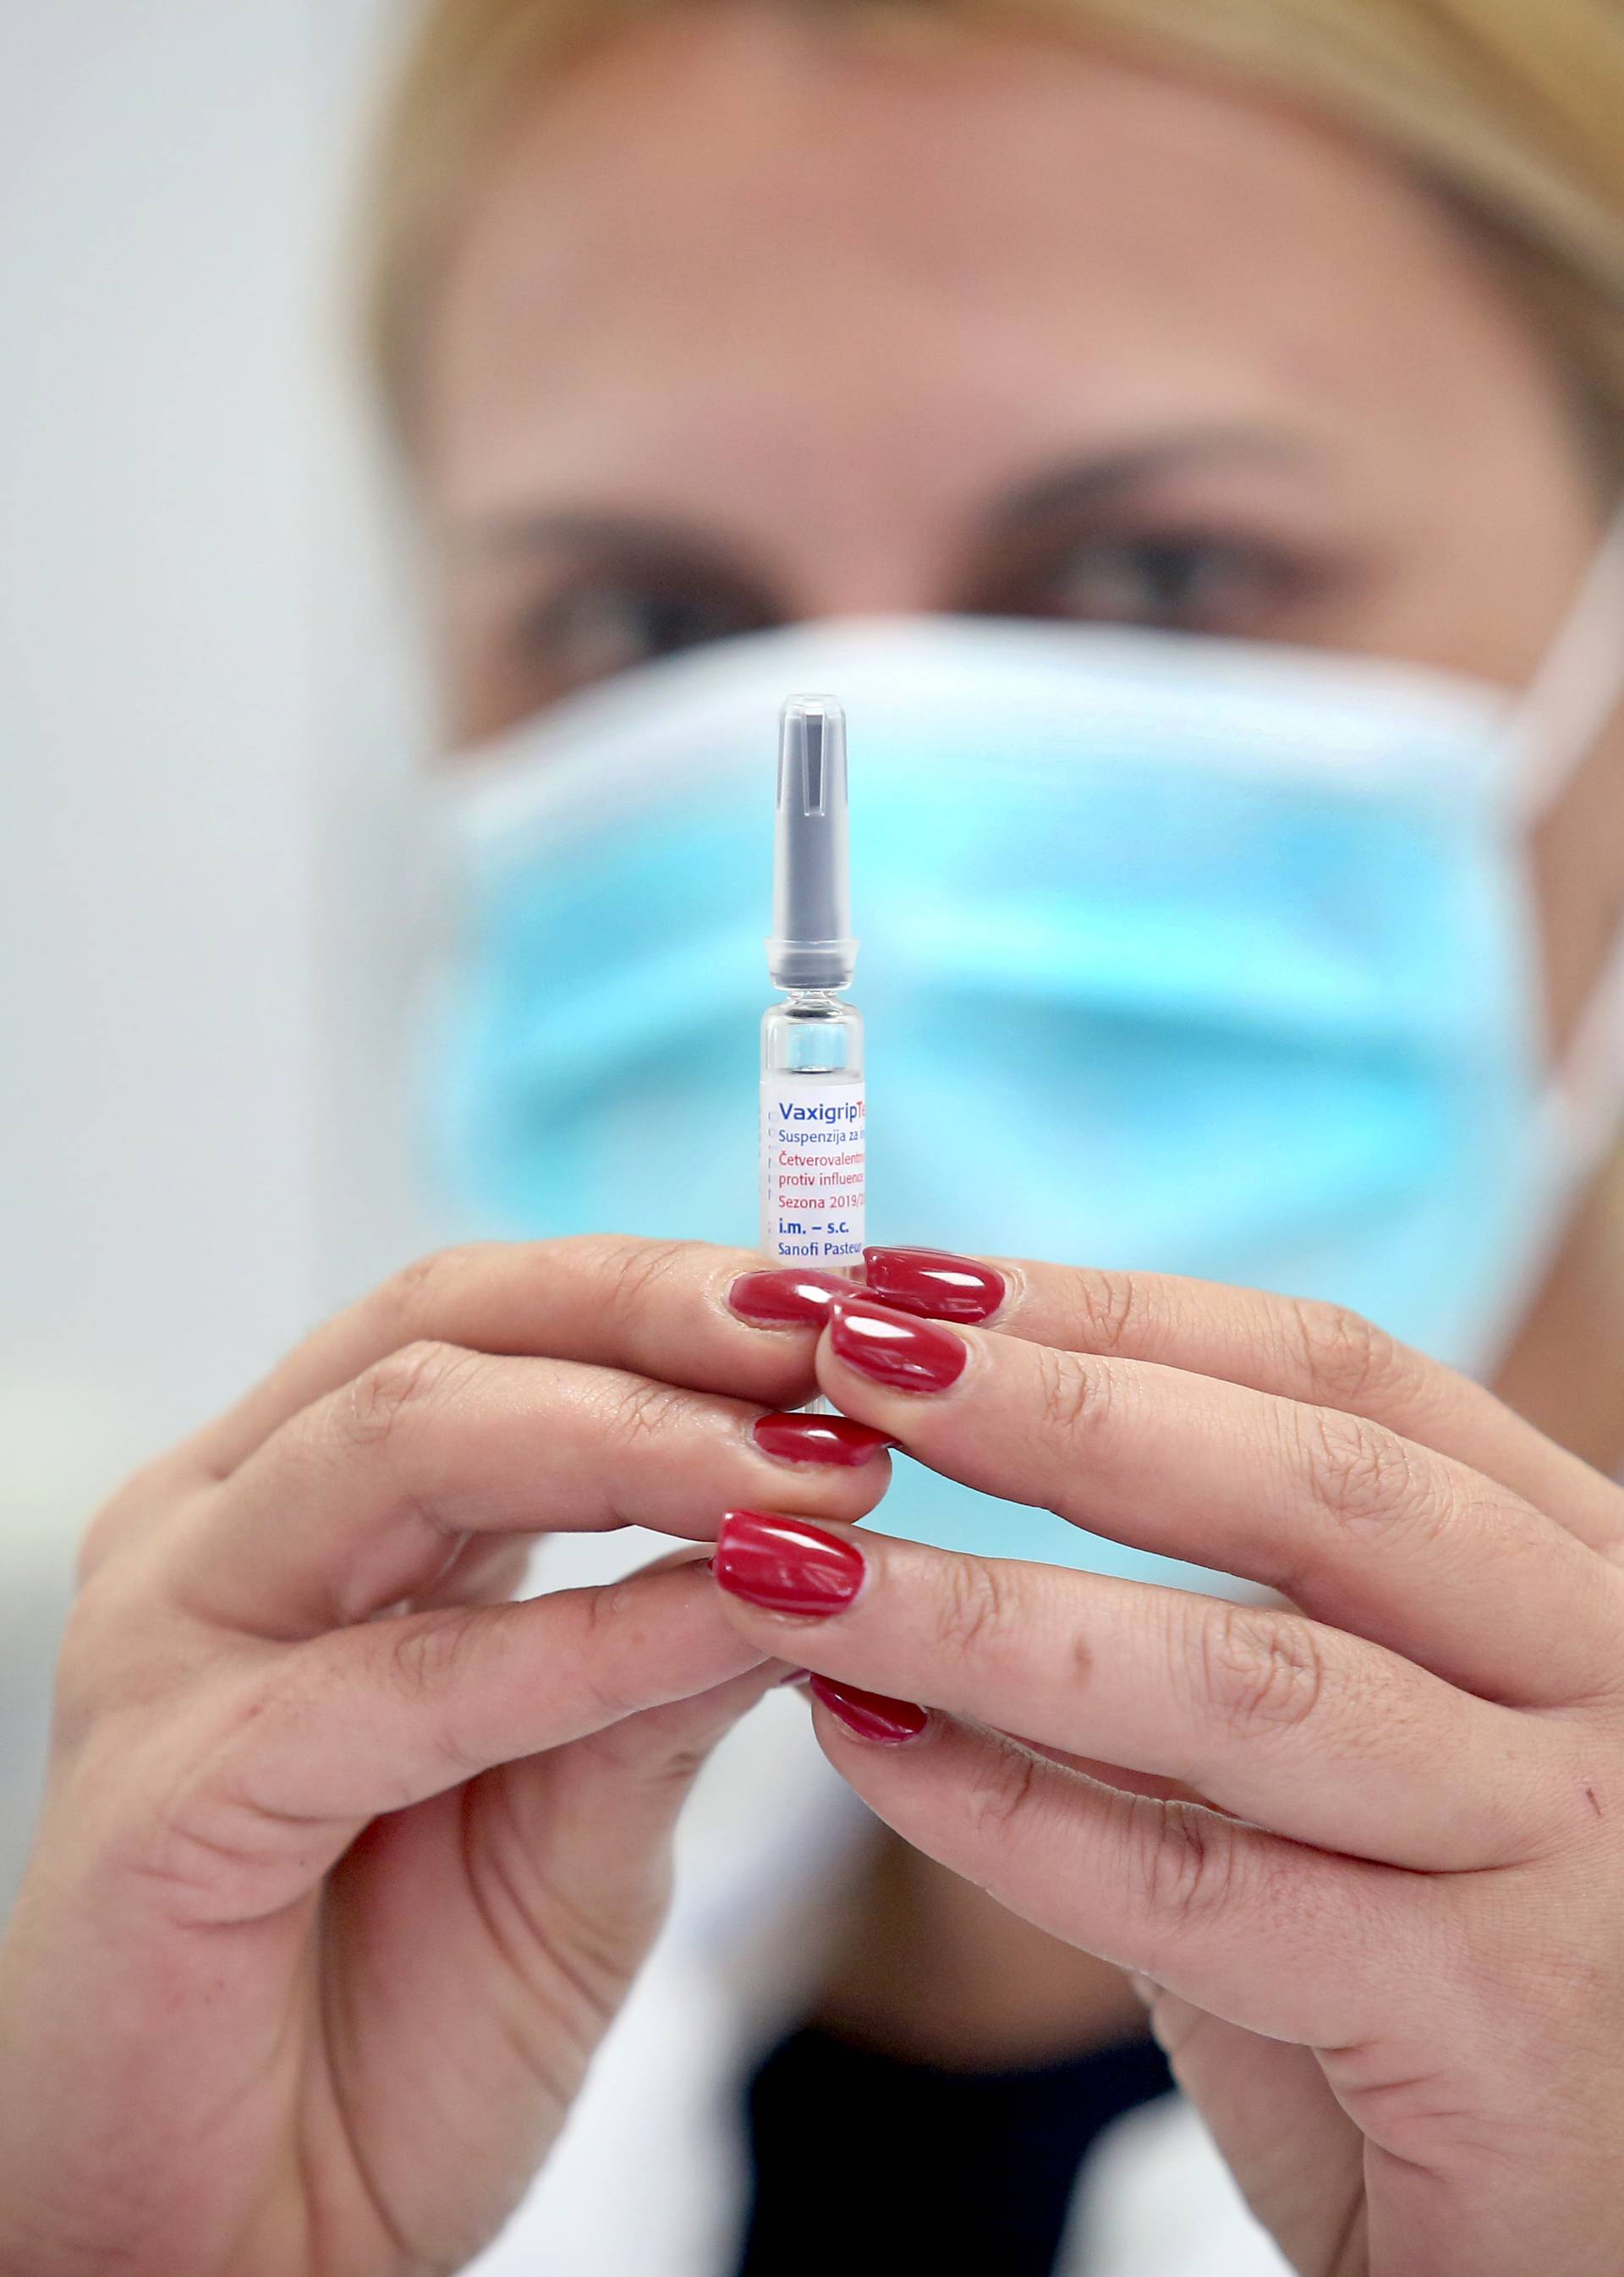 Utrka za cjepivom: U potrazi za lijekom koriste nove metode